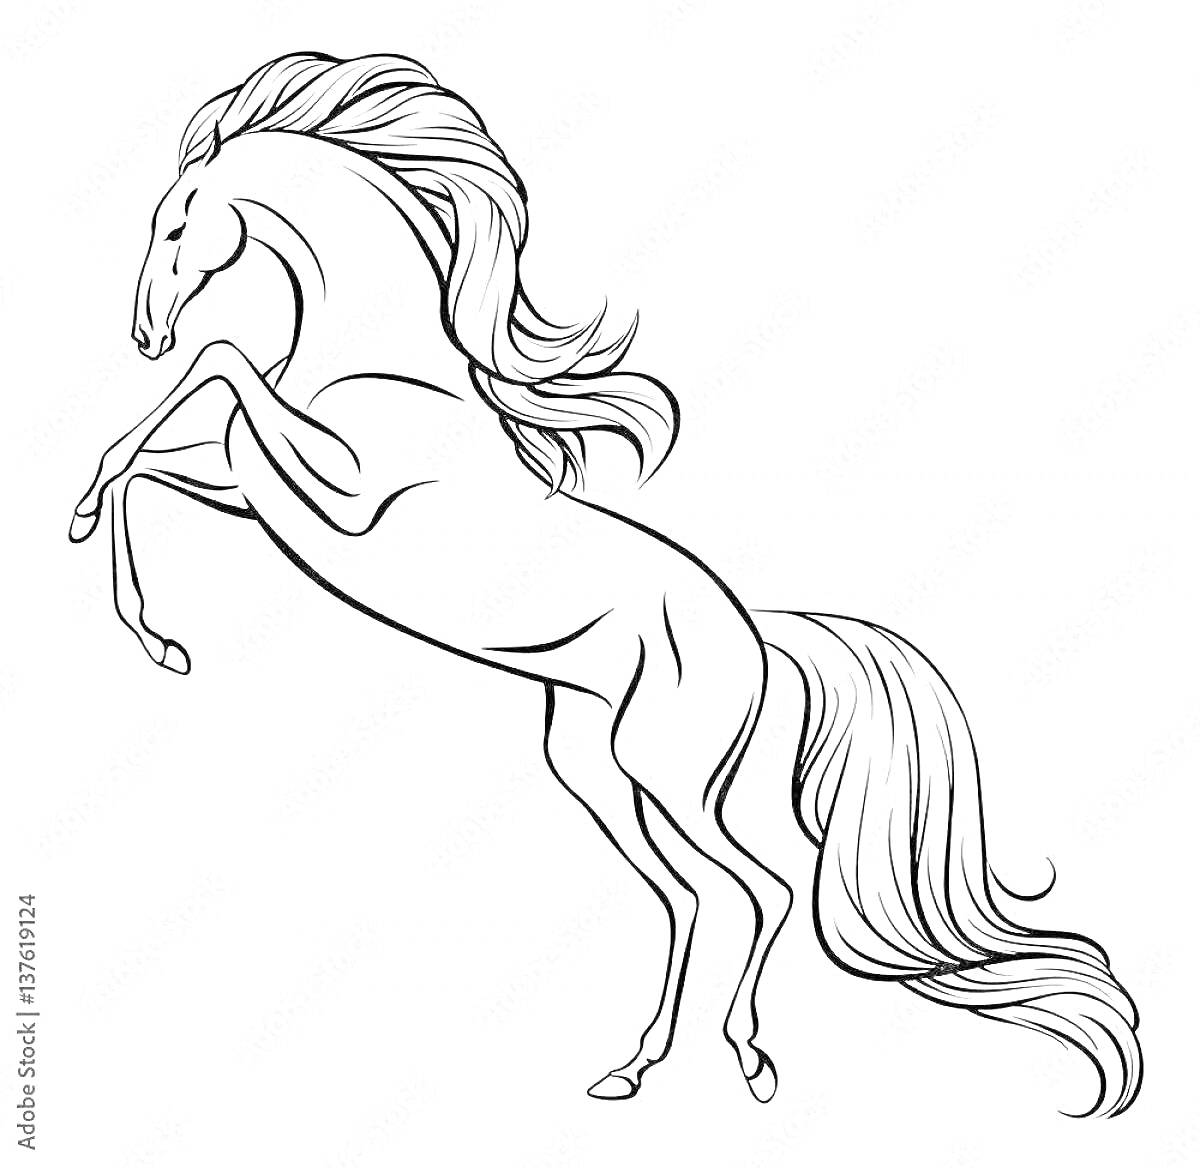 Раскраска Лошадь на дыбах с развивающейся гривой и хвостом, контурное изображение